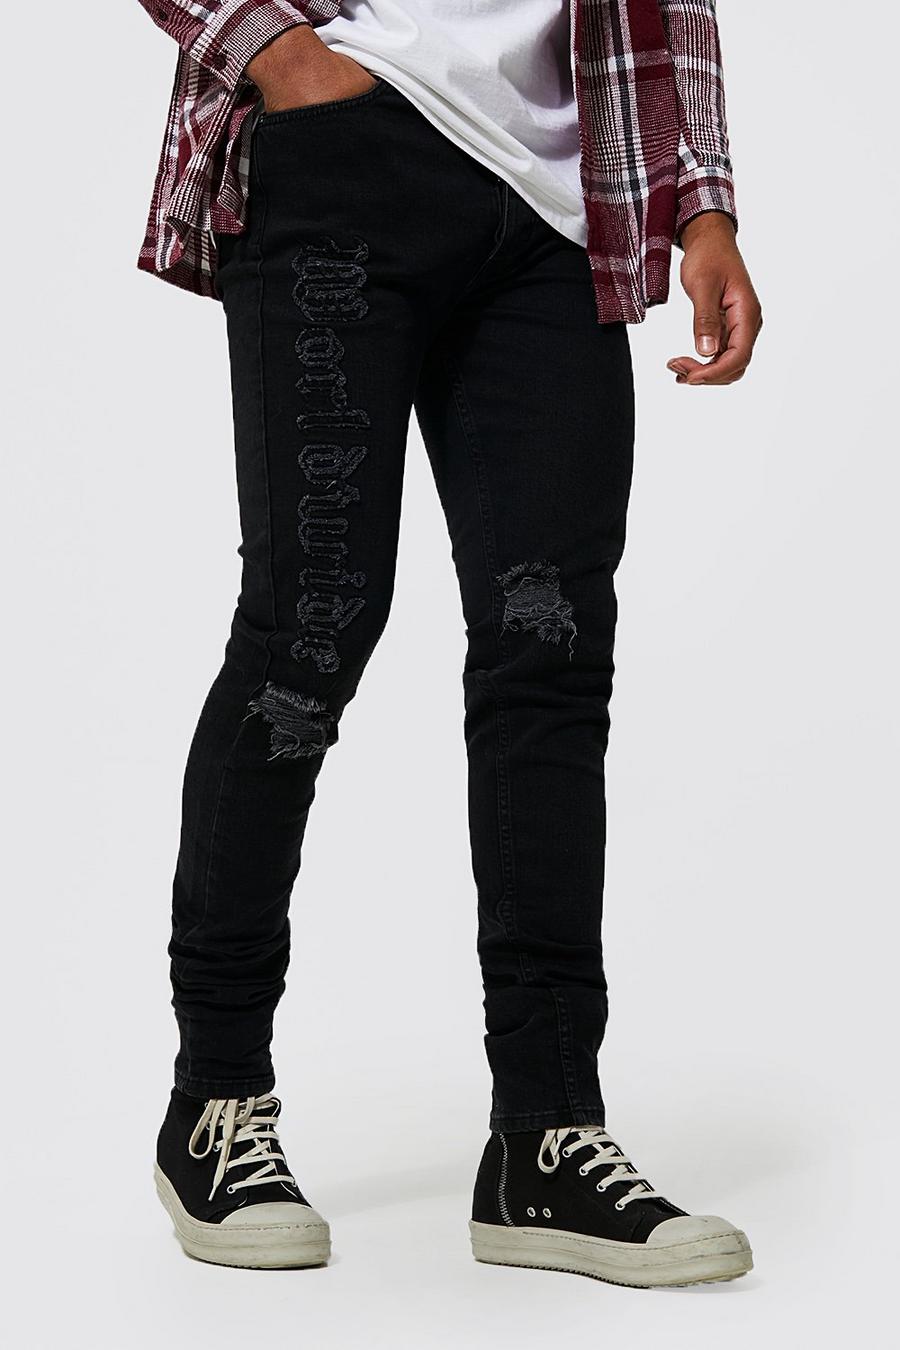 שחור nero סקיני ג'ינס עם אפליקציית Worldwide, לגברים גבוהים